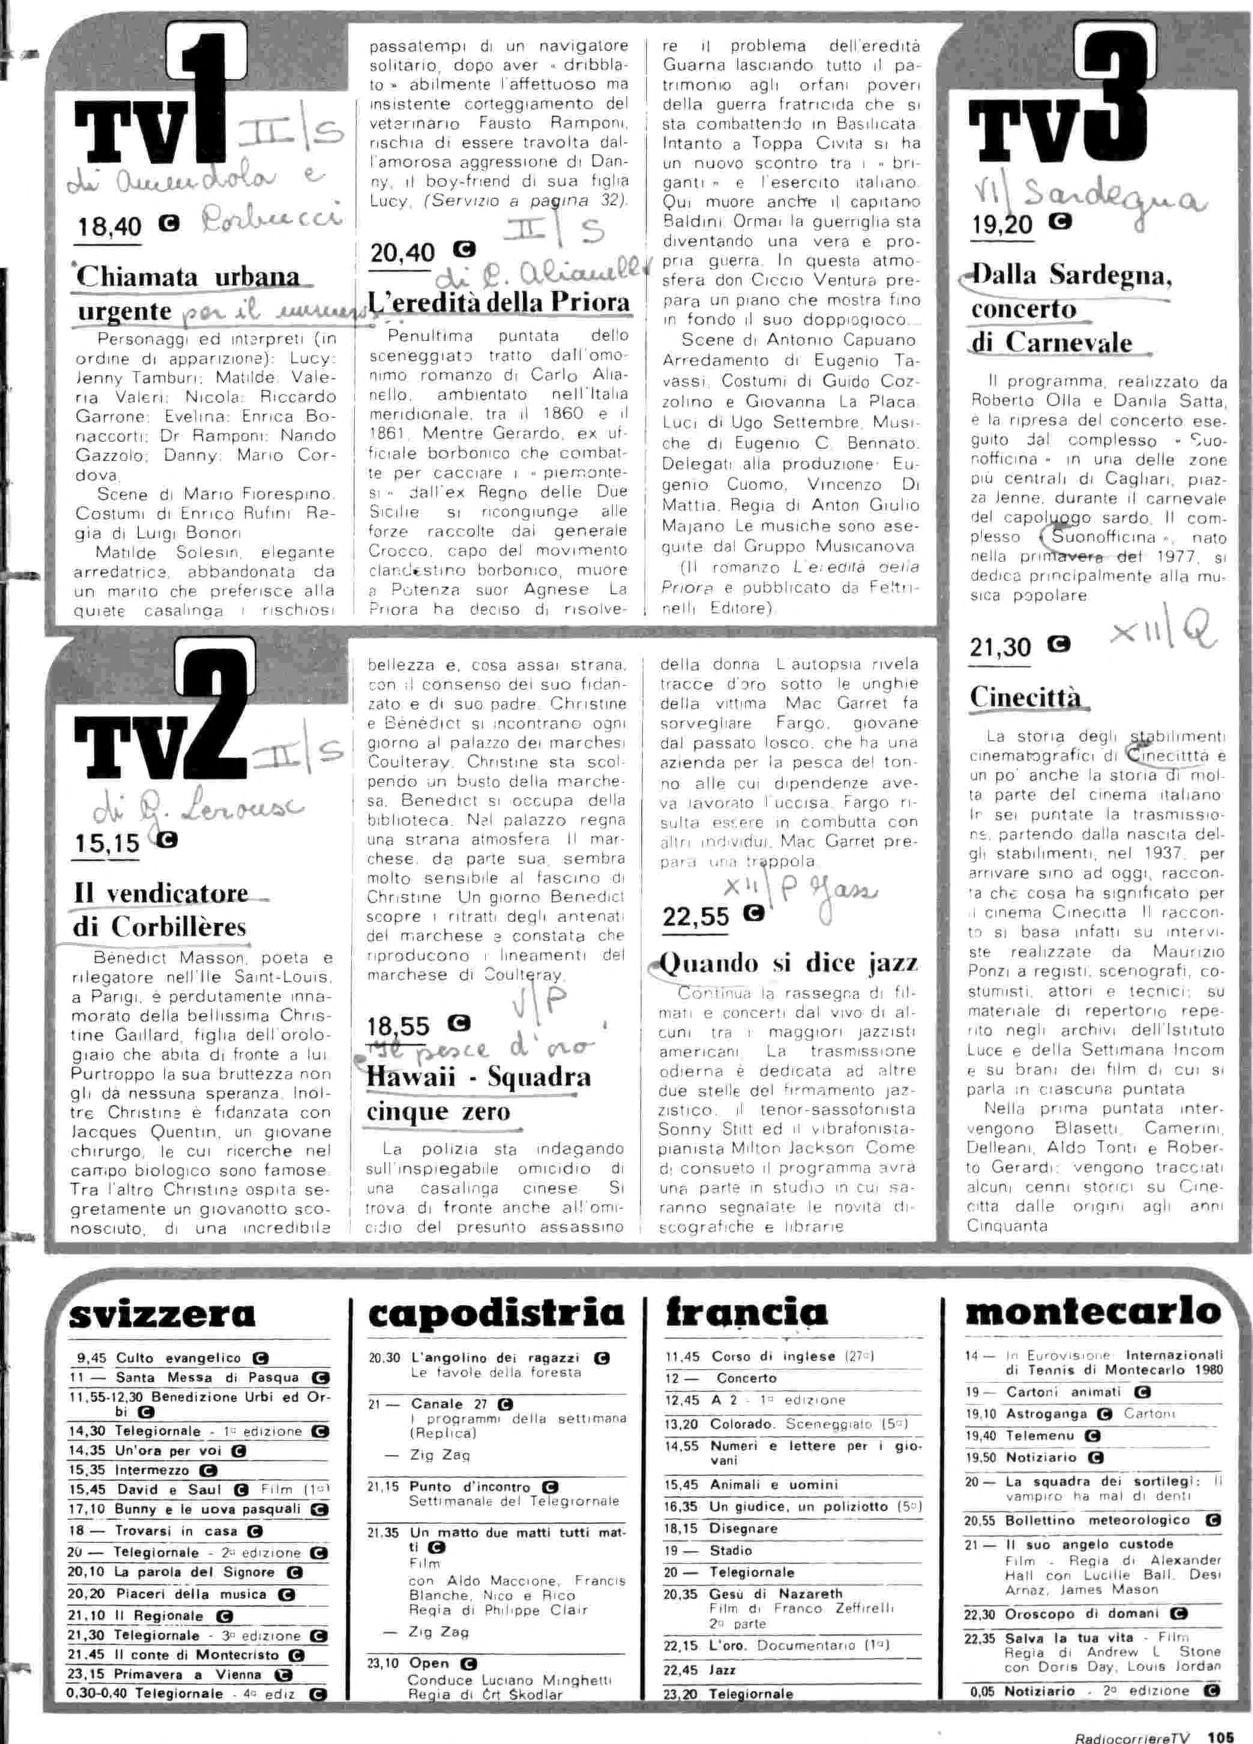 RC-1980-15_0104.jp2&id=Radiocorriere-198